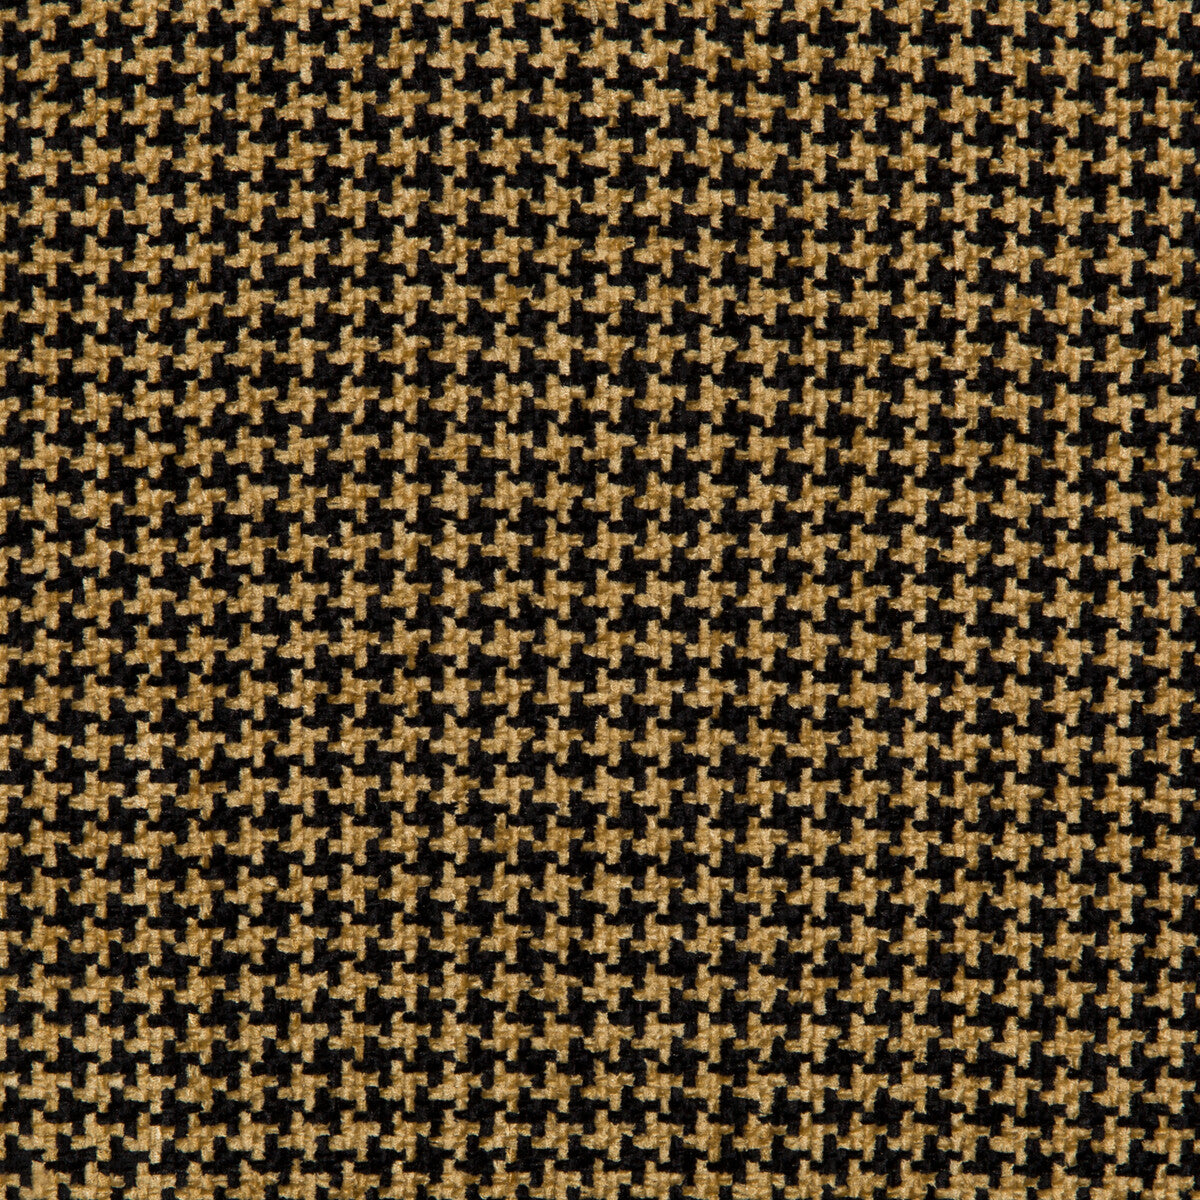 Kravet Basics fabric in 35778-816 color - pattern 35778.816.0 - by Kravet Basics